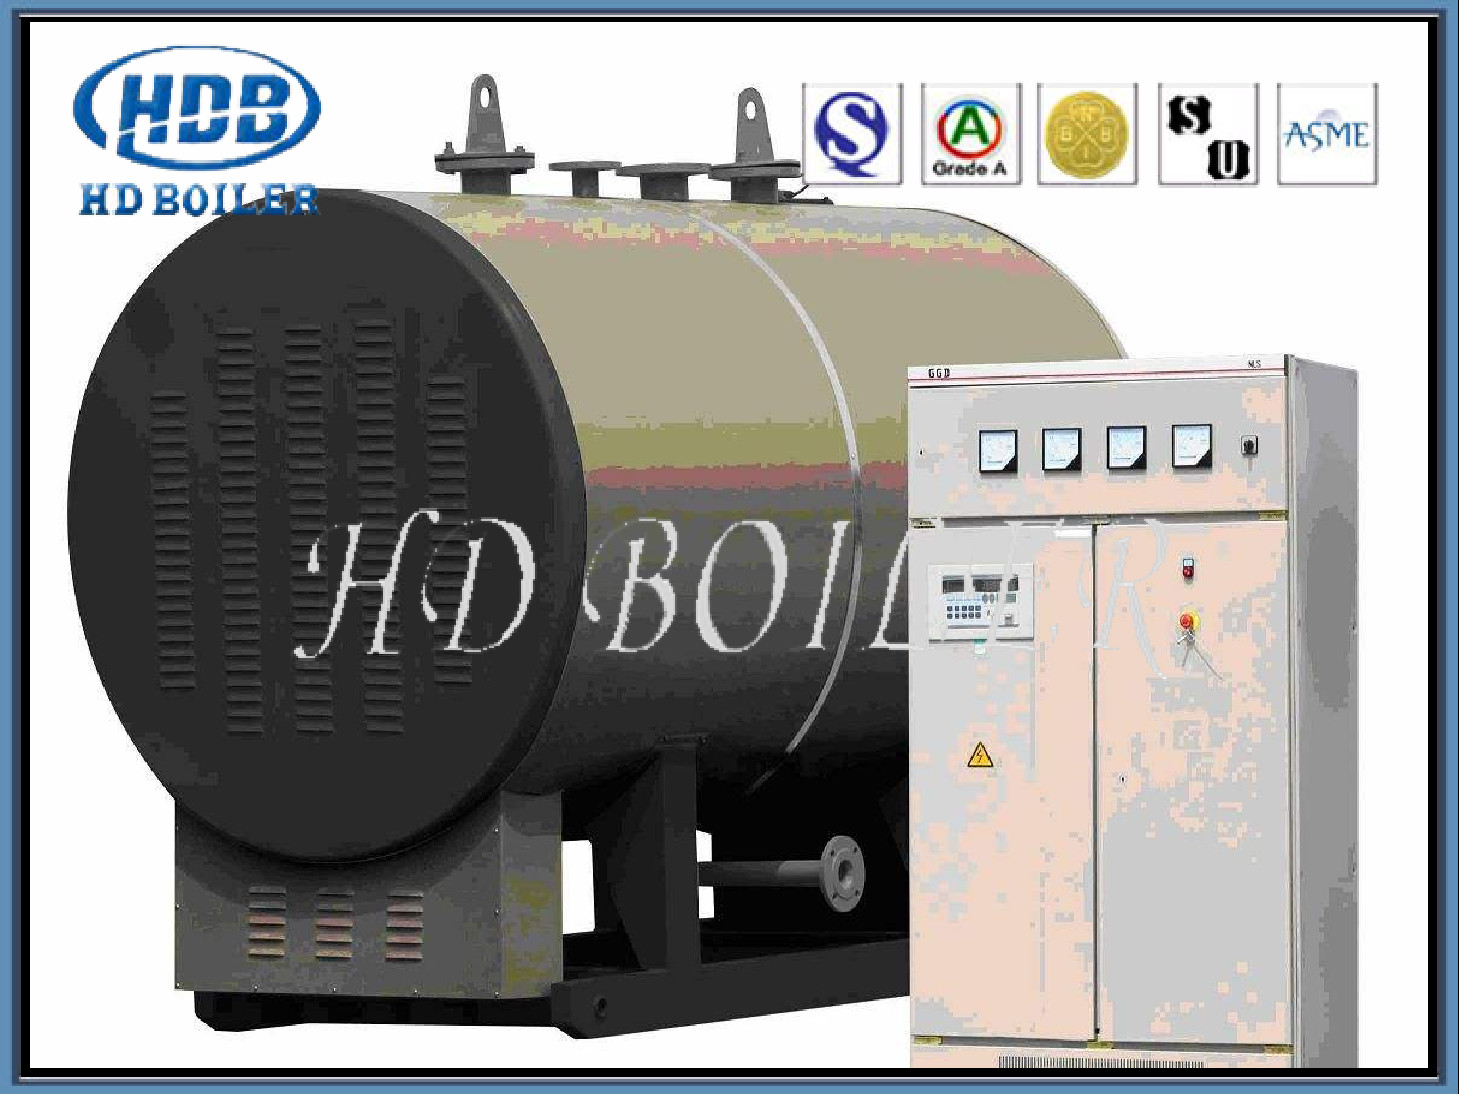 لوله حرارتی بخار آب بخار با بهره وری حرارتی ساختار کاملاً محصور با طراحی HDB